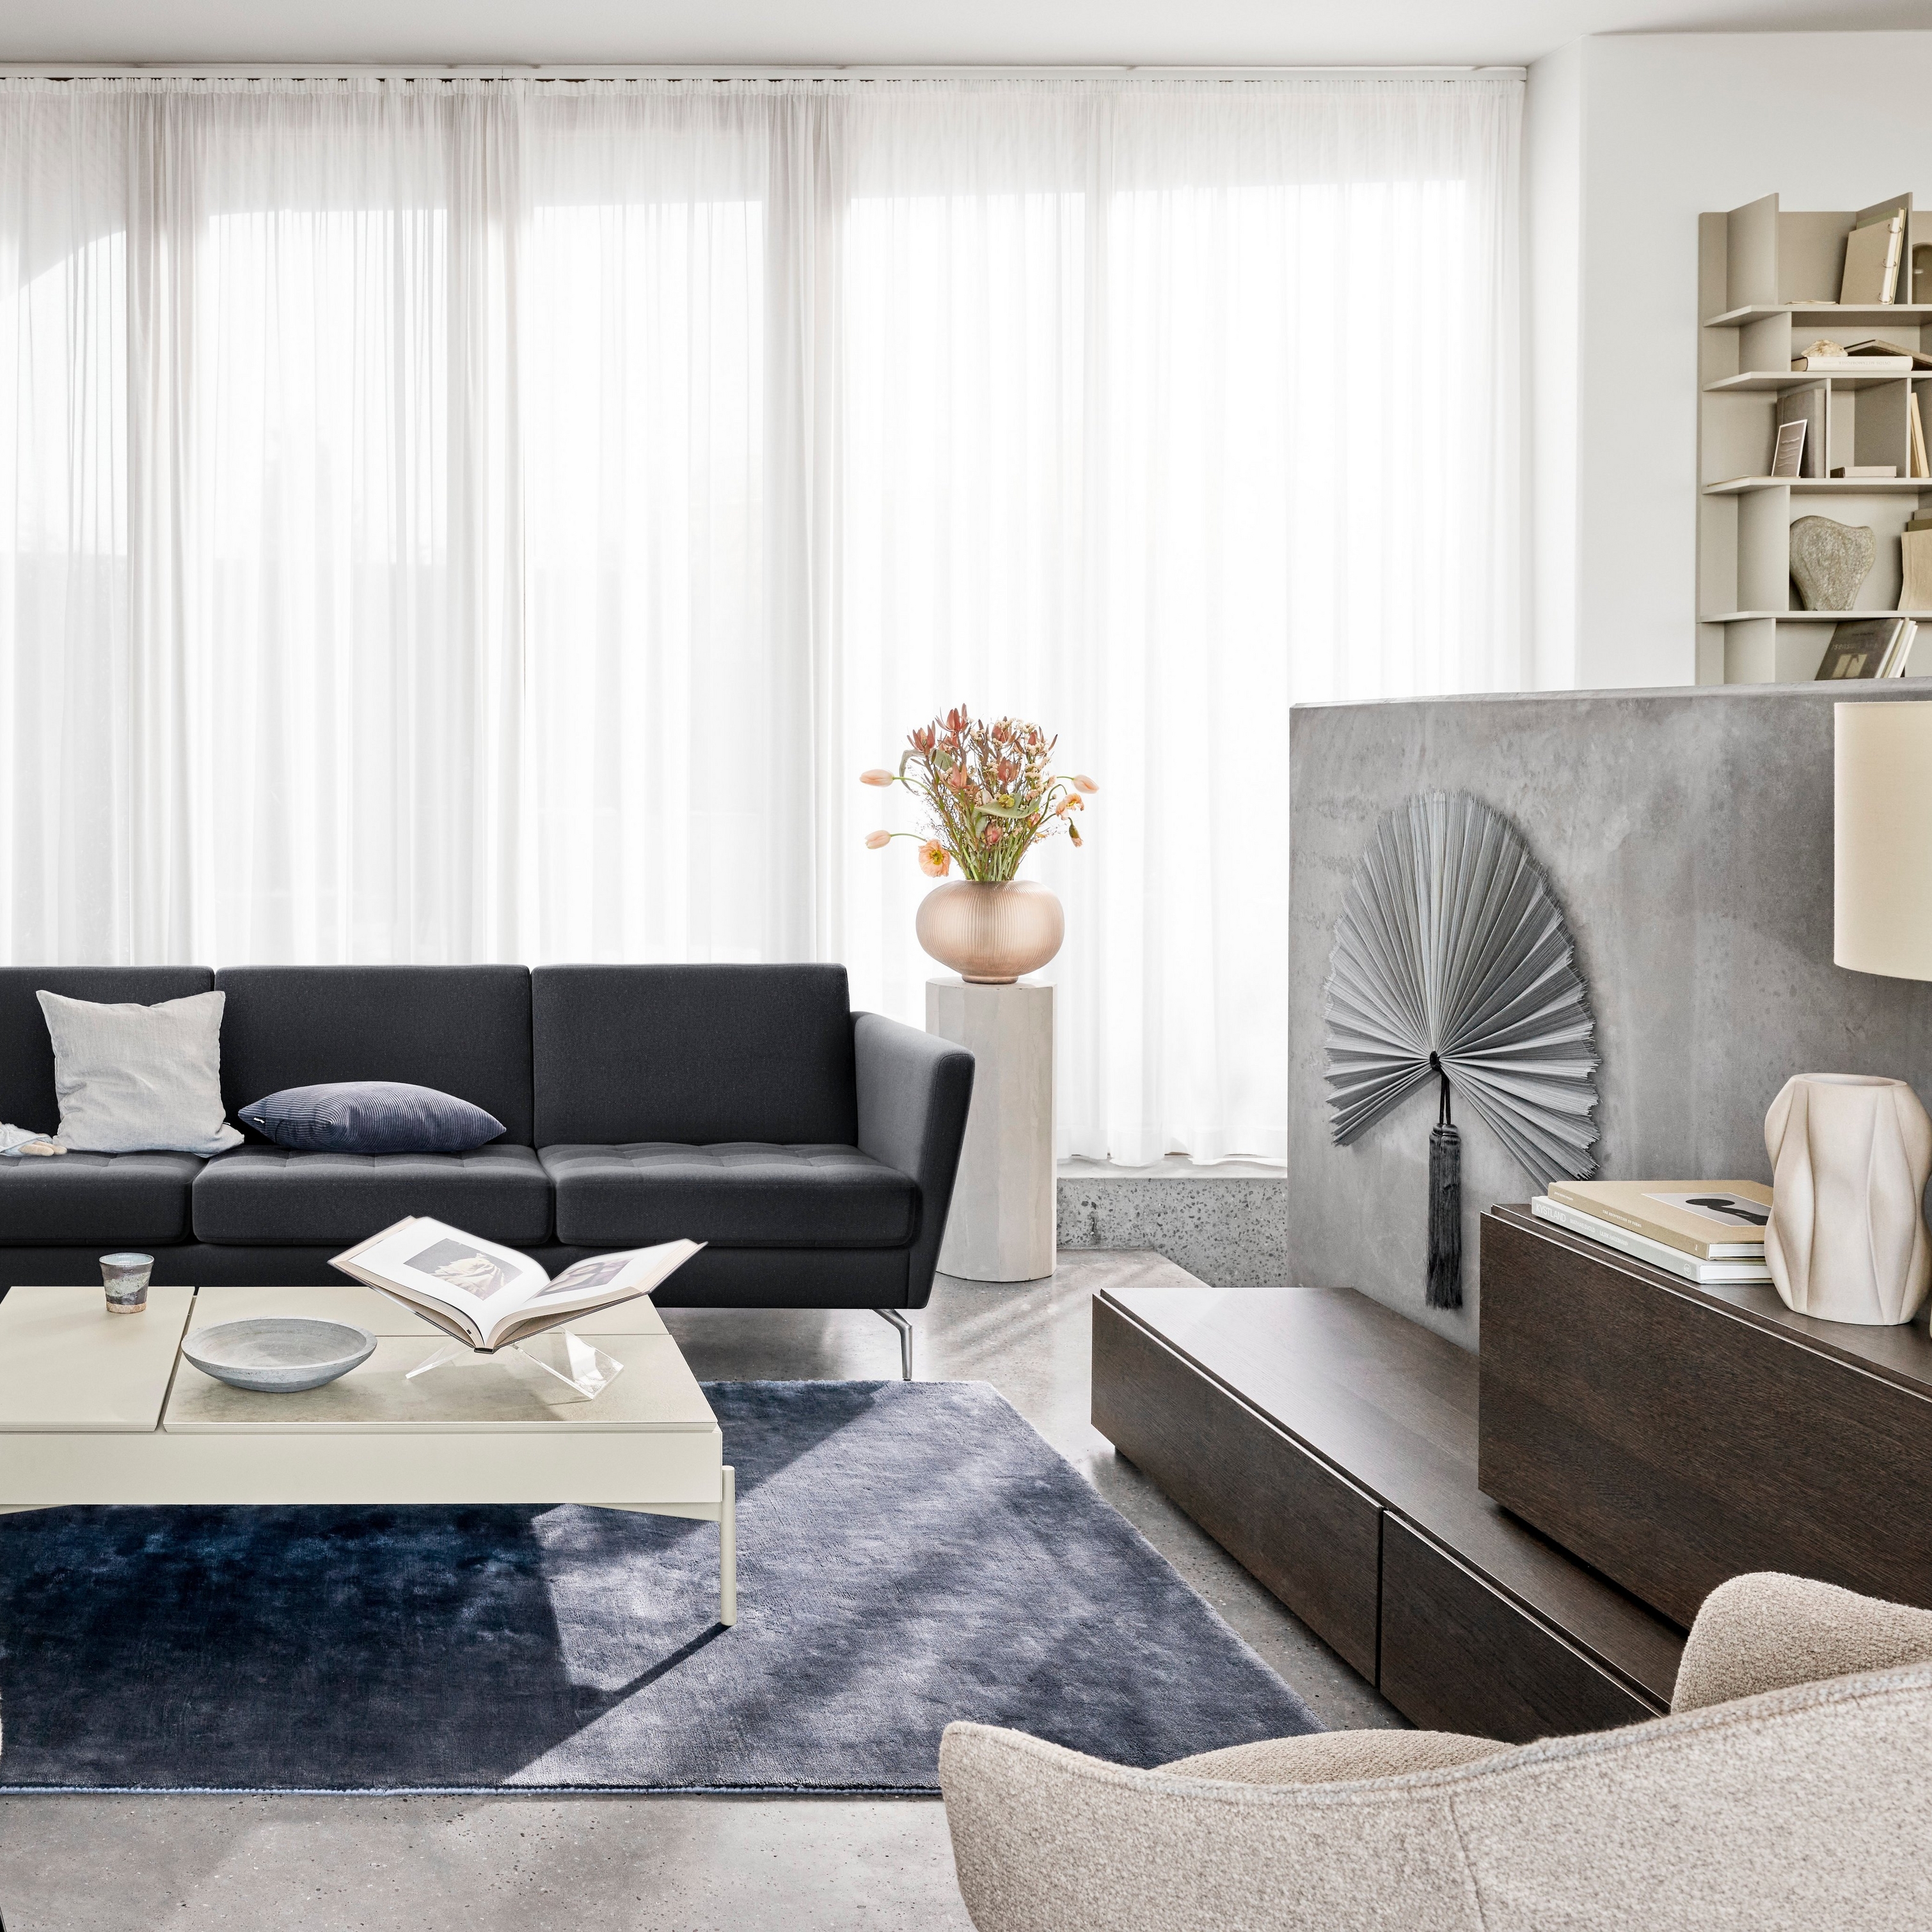 Moderne woonkamer met zwarte zitbank, stoelen, transparante gordijnen en decoratieve elementen.